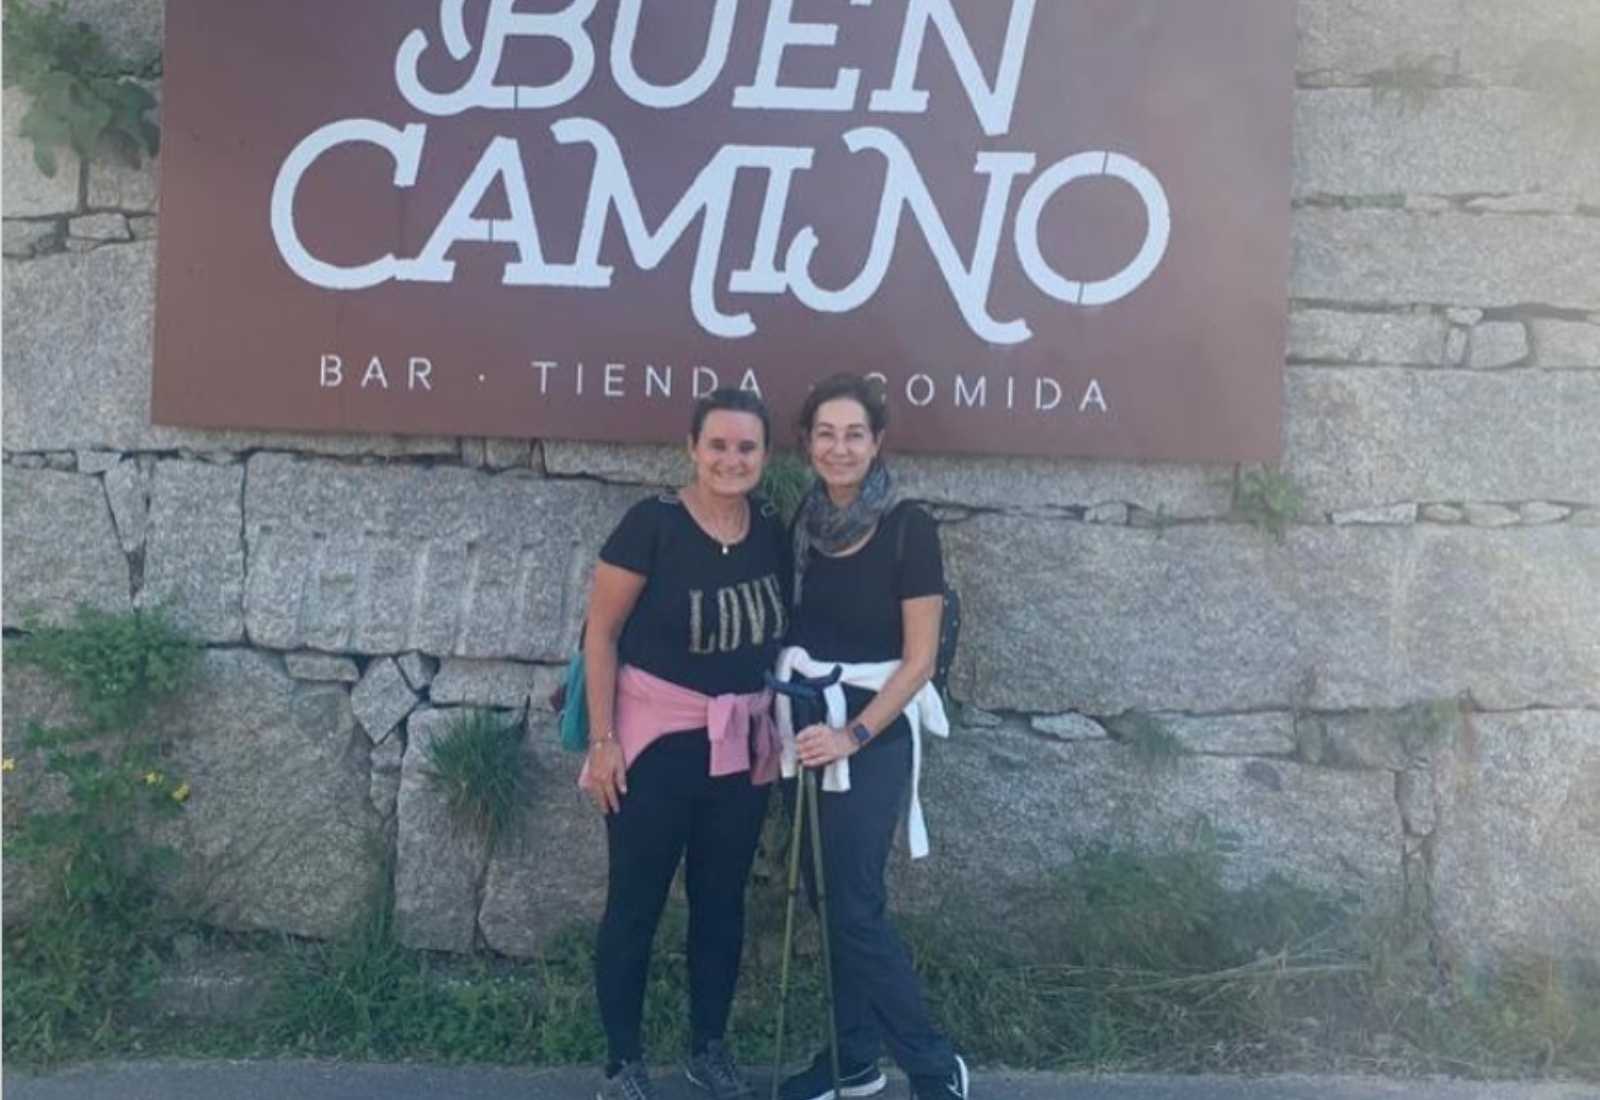 Women pilgrims can enjoy a Buen Camino today